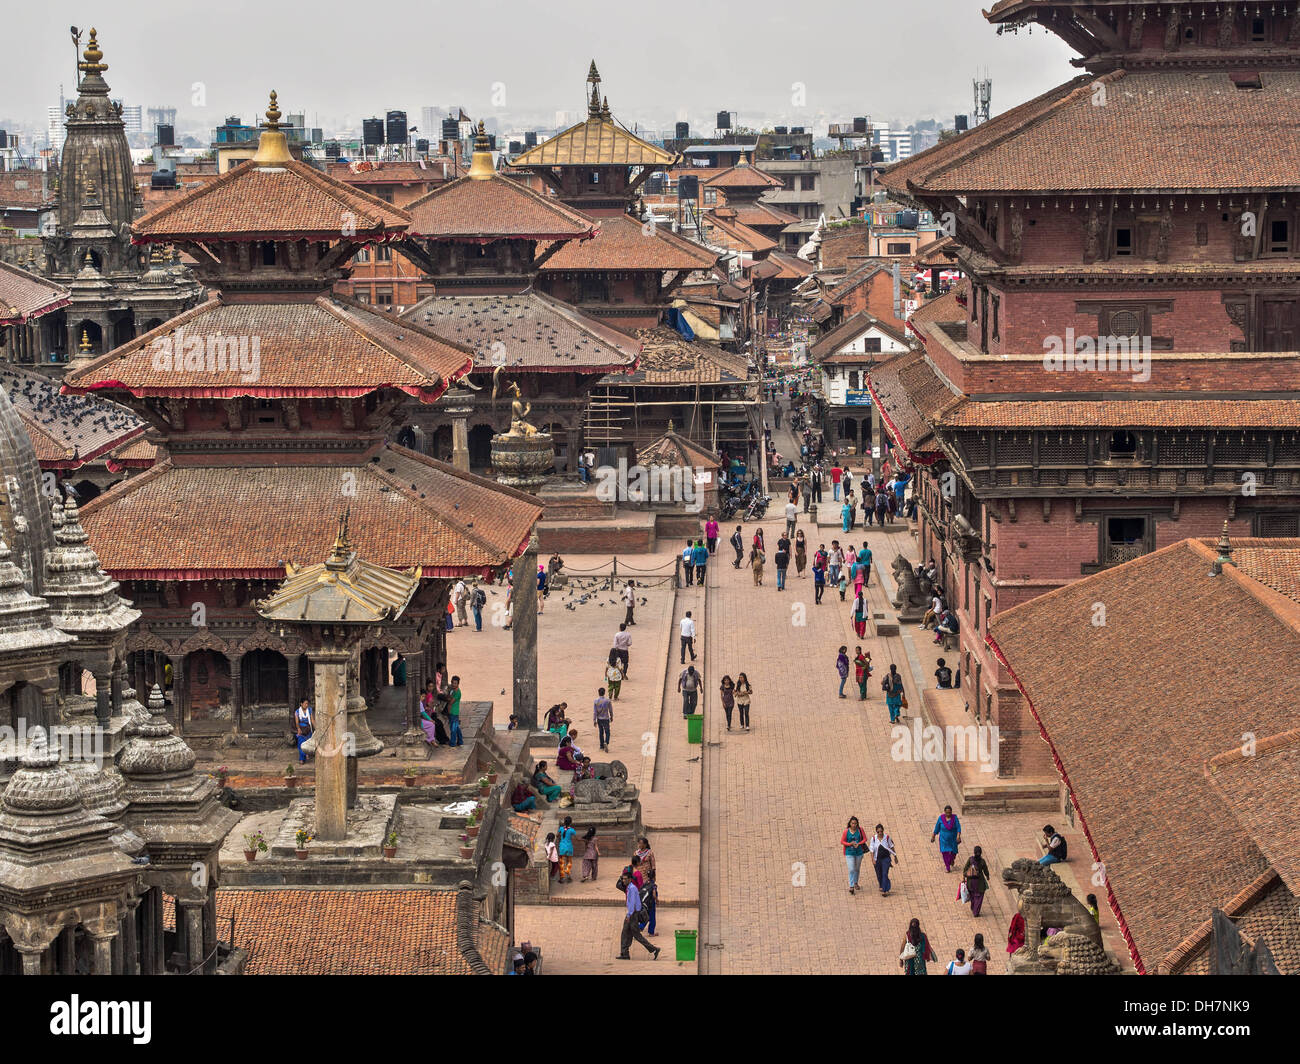 Anciens temples et bâtiments de Patan Durbar Square, Katmandou, Népal. Banque D'Images